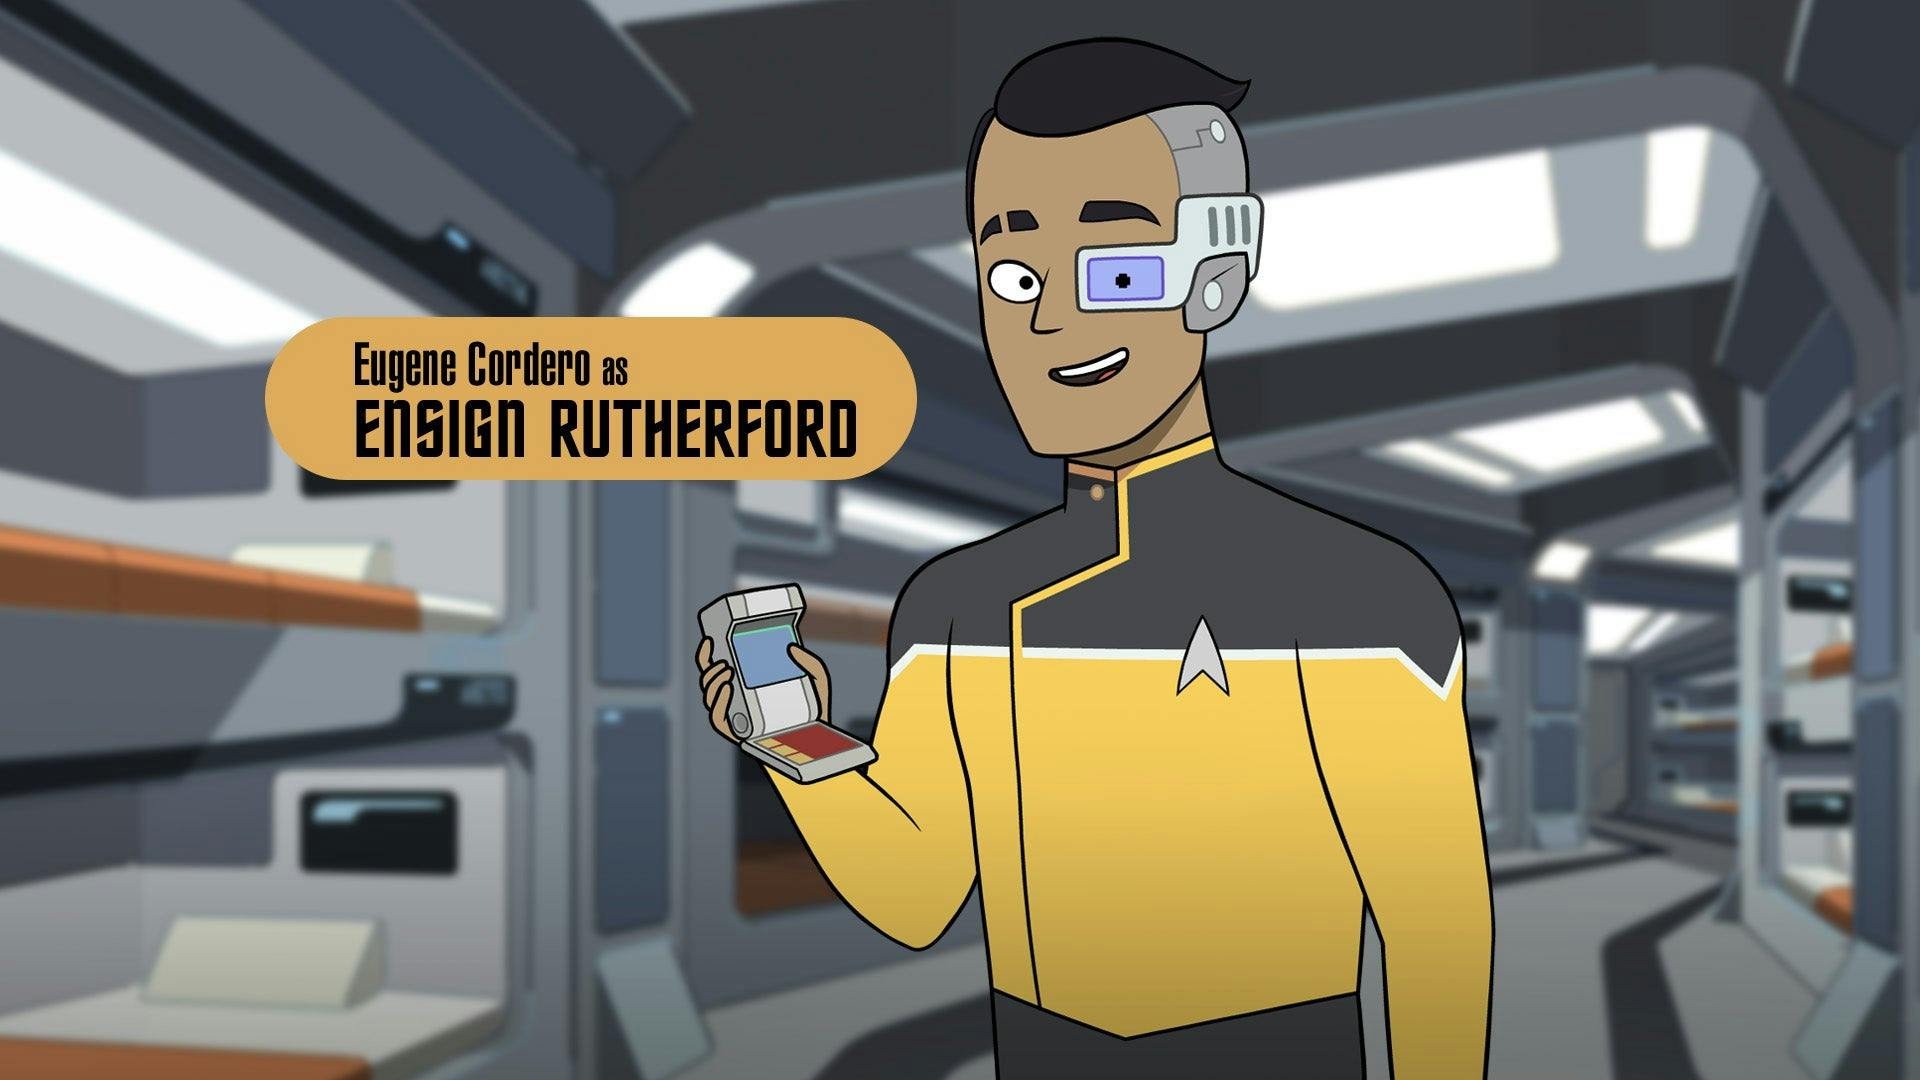 Eurgene Cordero as Ensign Rutherford in Star Trek: Lower Decks